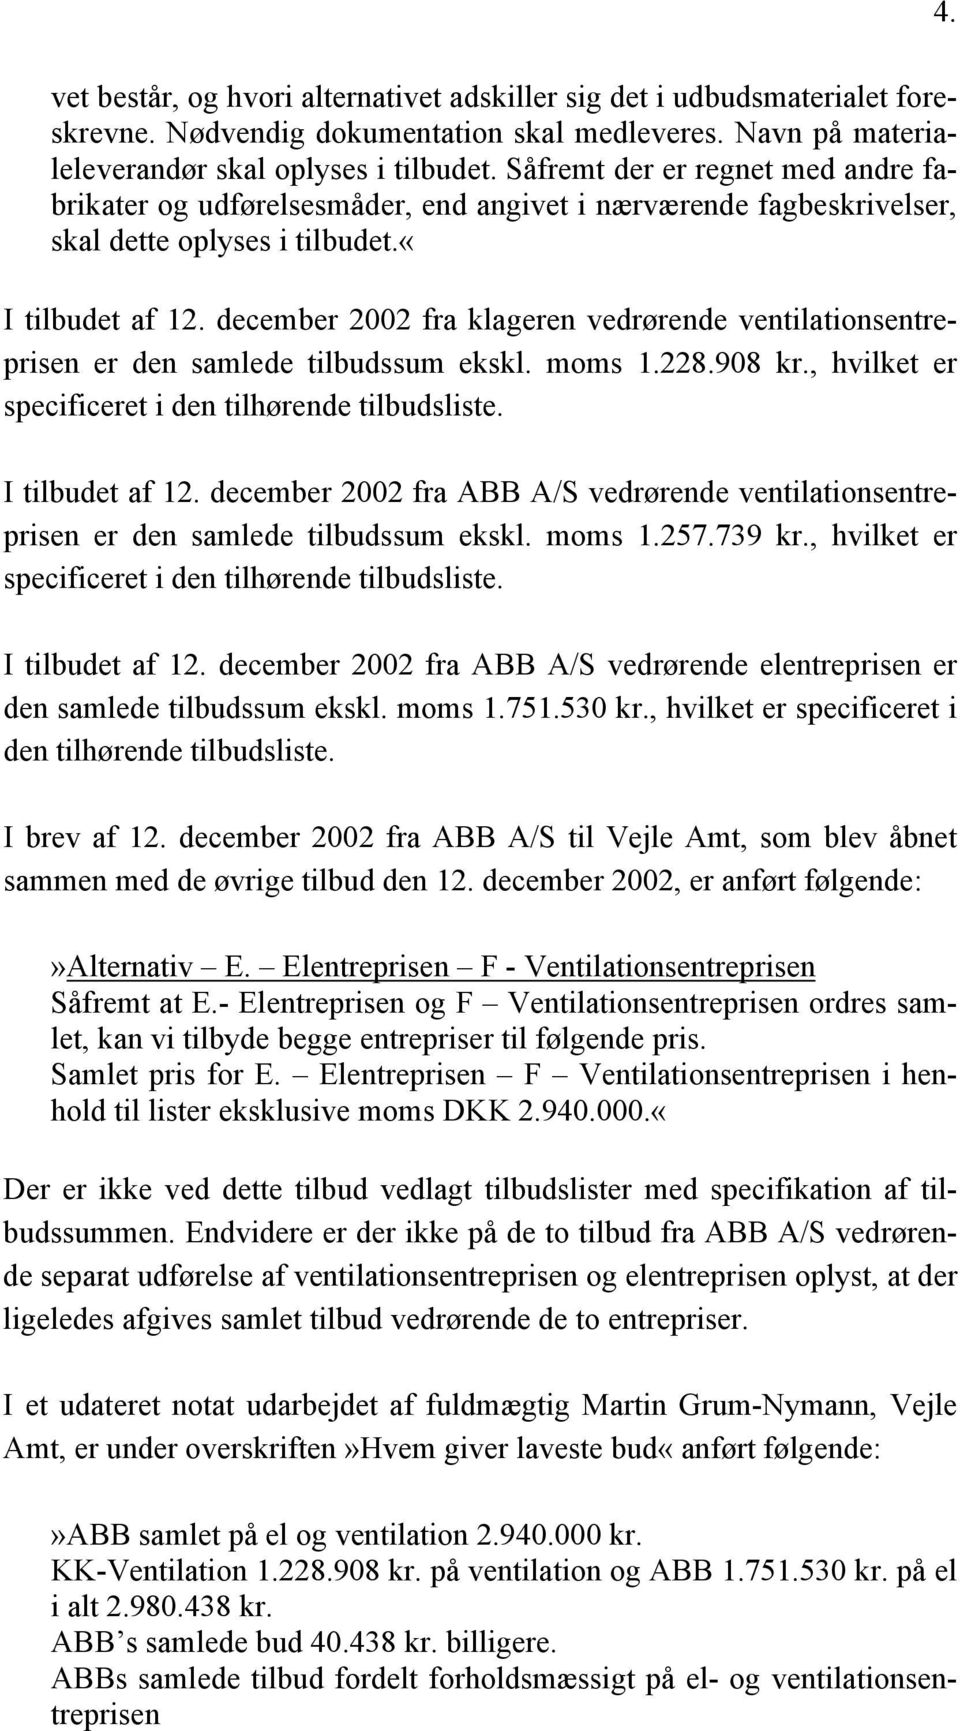 december 2002 fra klageren vedrørende ventilationsentreprisen er den samlede tilbudssum ekskl. moms 1.228.908 kr., hvilket er specificeret i den tilhørende tilbudsliste. 4. I tilbudet af 12.